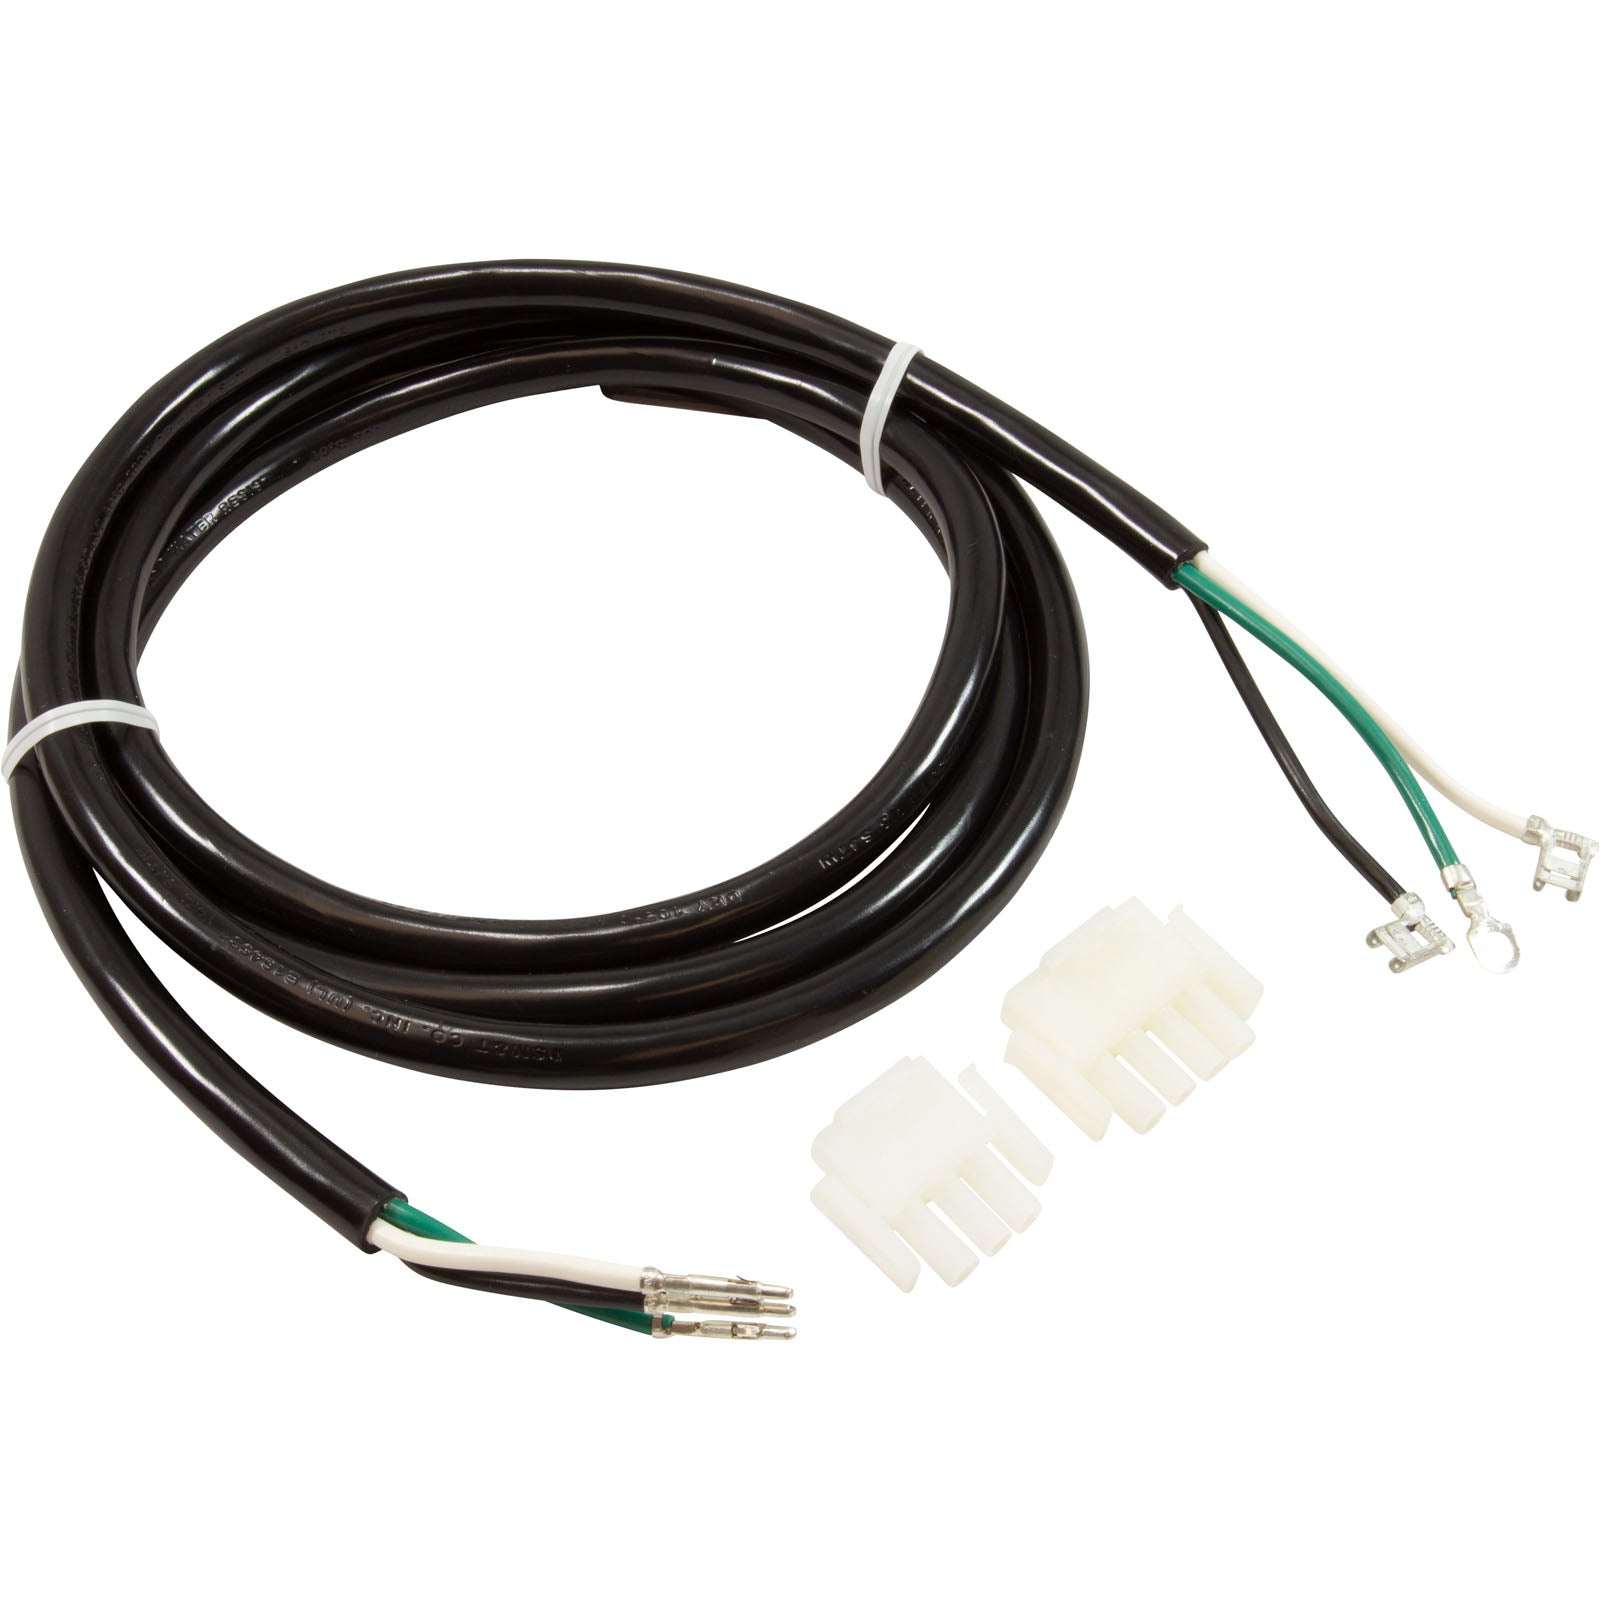 Pump Cord / Air Blower / Ozone Cord [1 spd] 14/3 amp plug 48